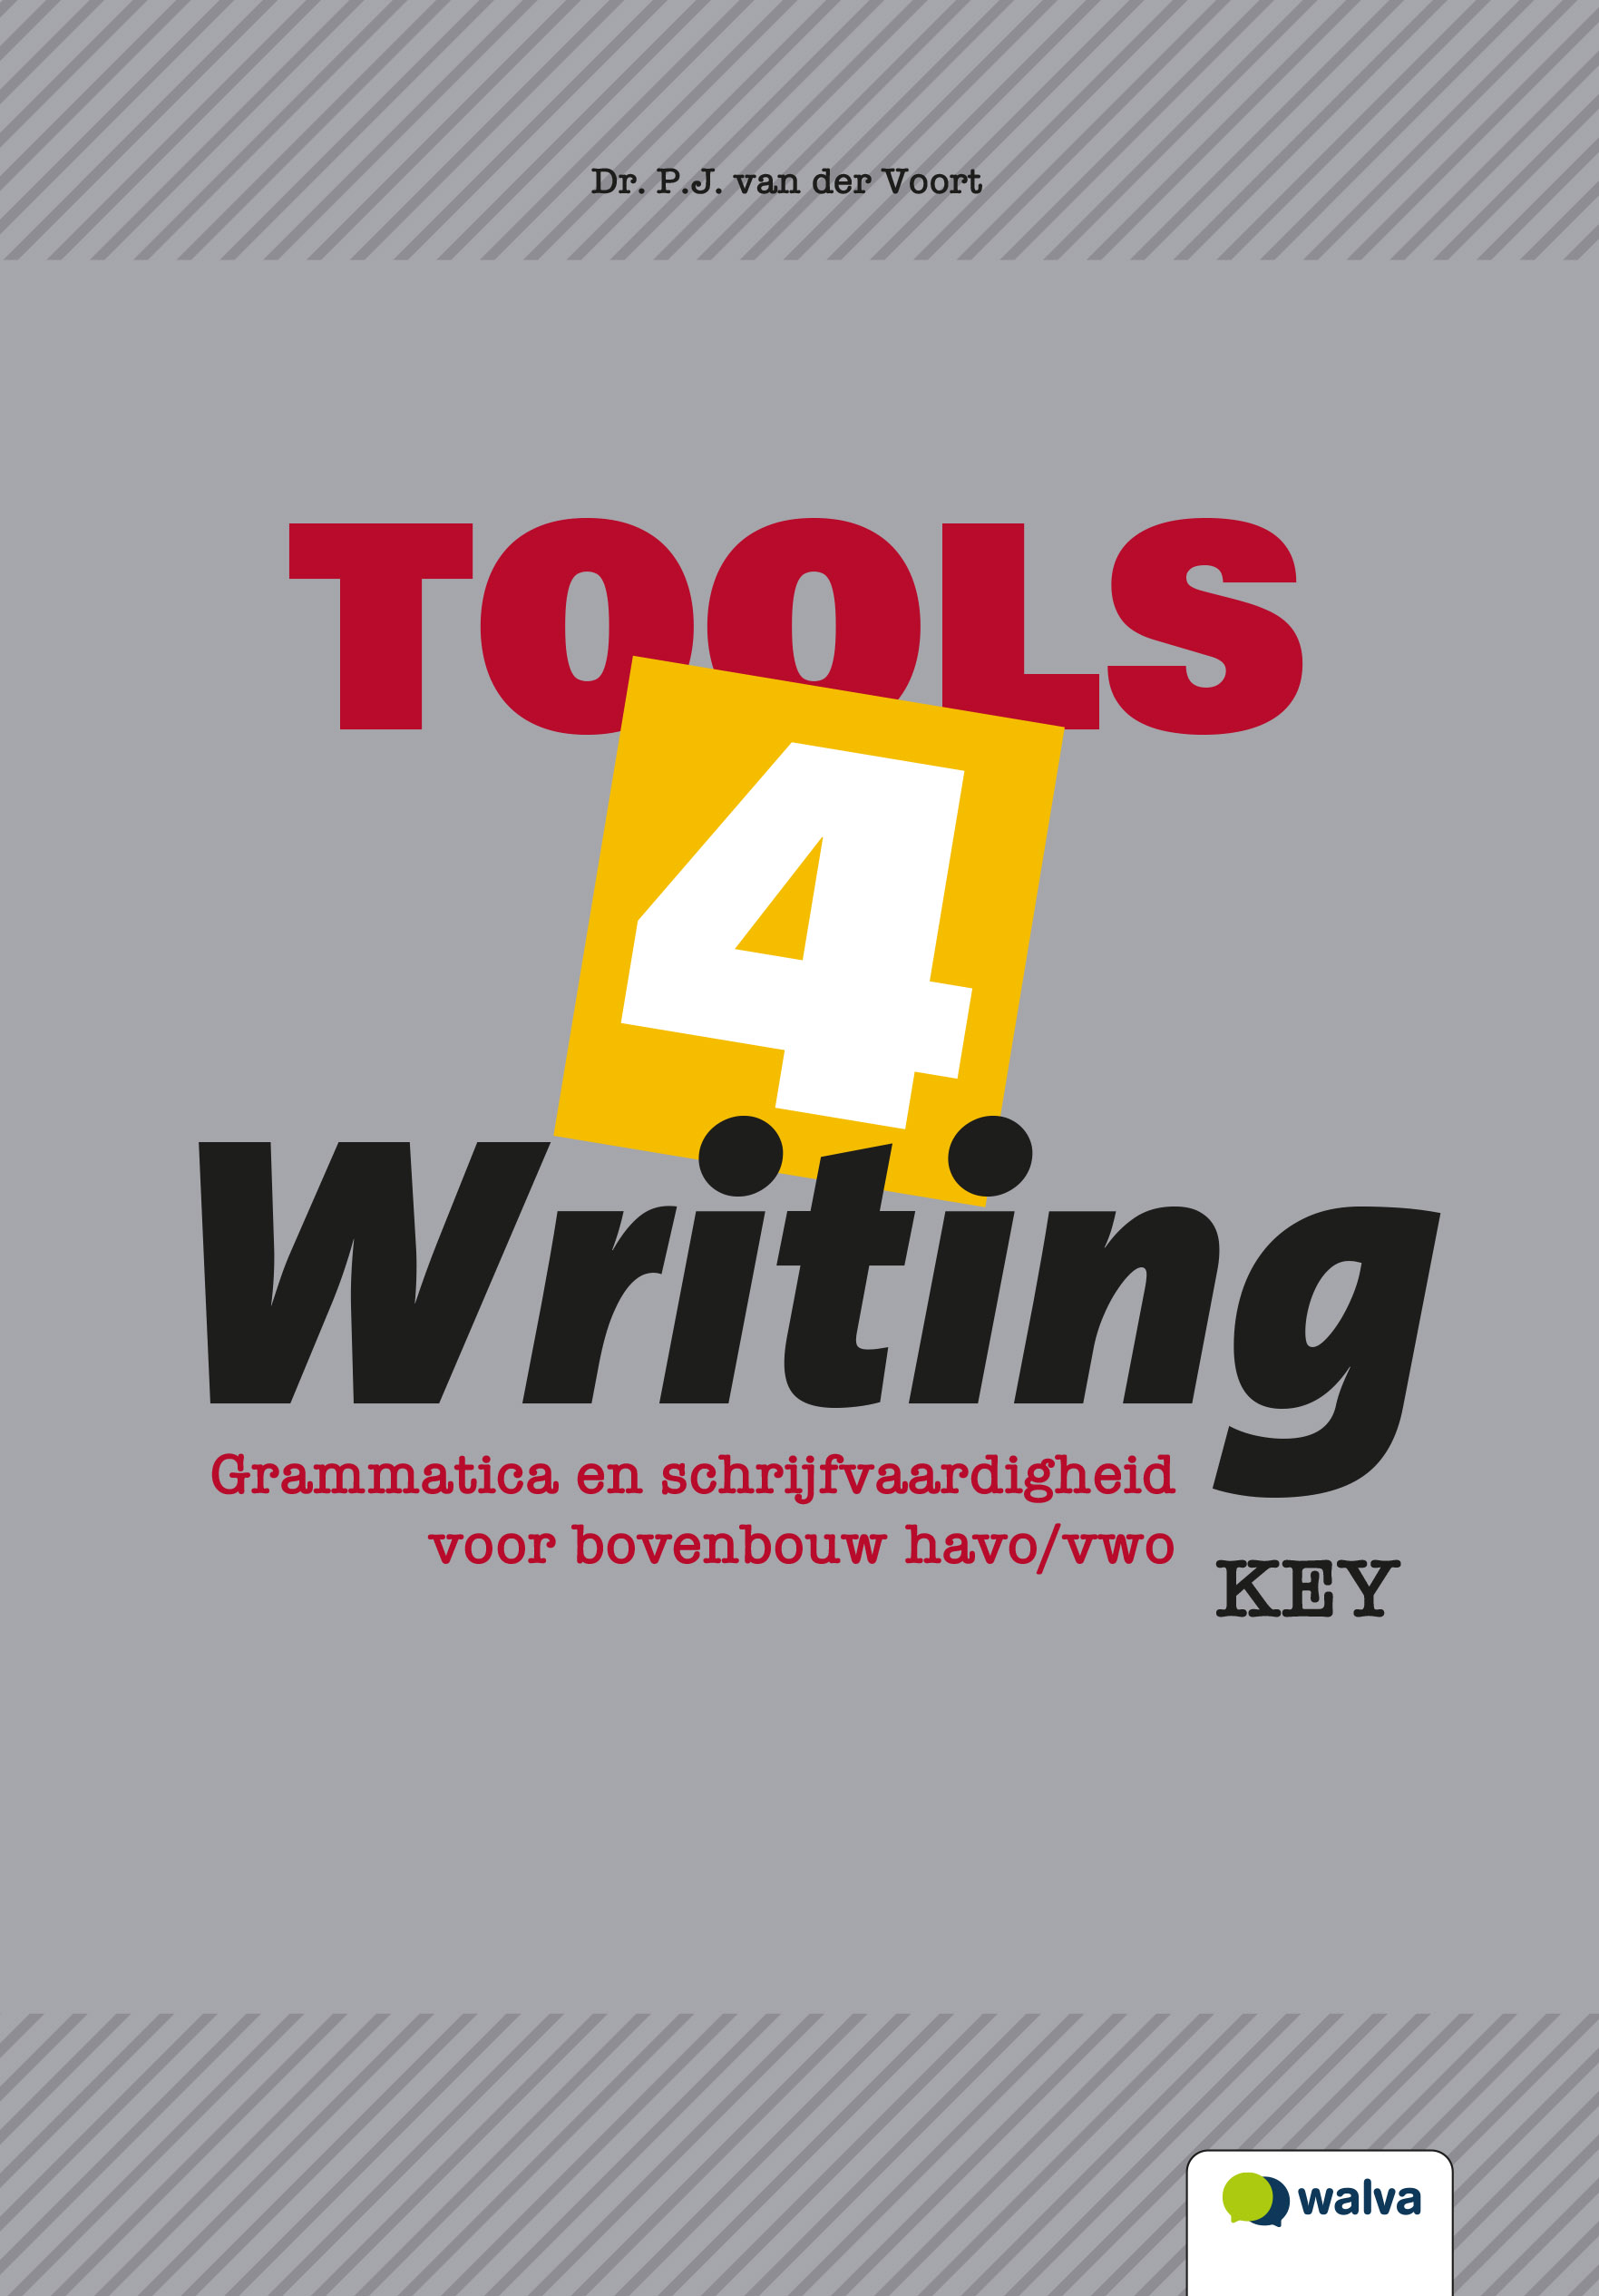 WEHTFW001 Tools 4 Writing, key